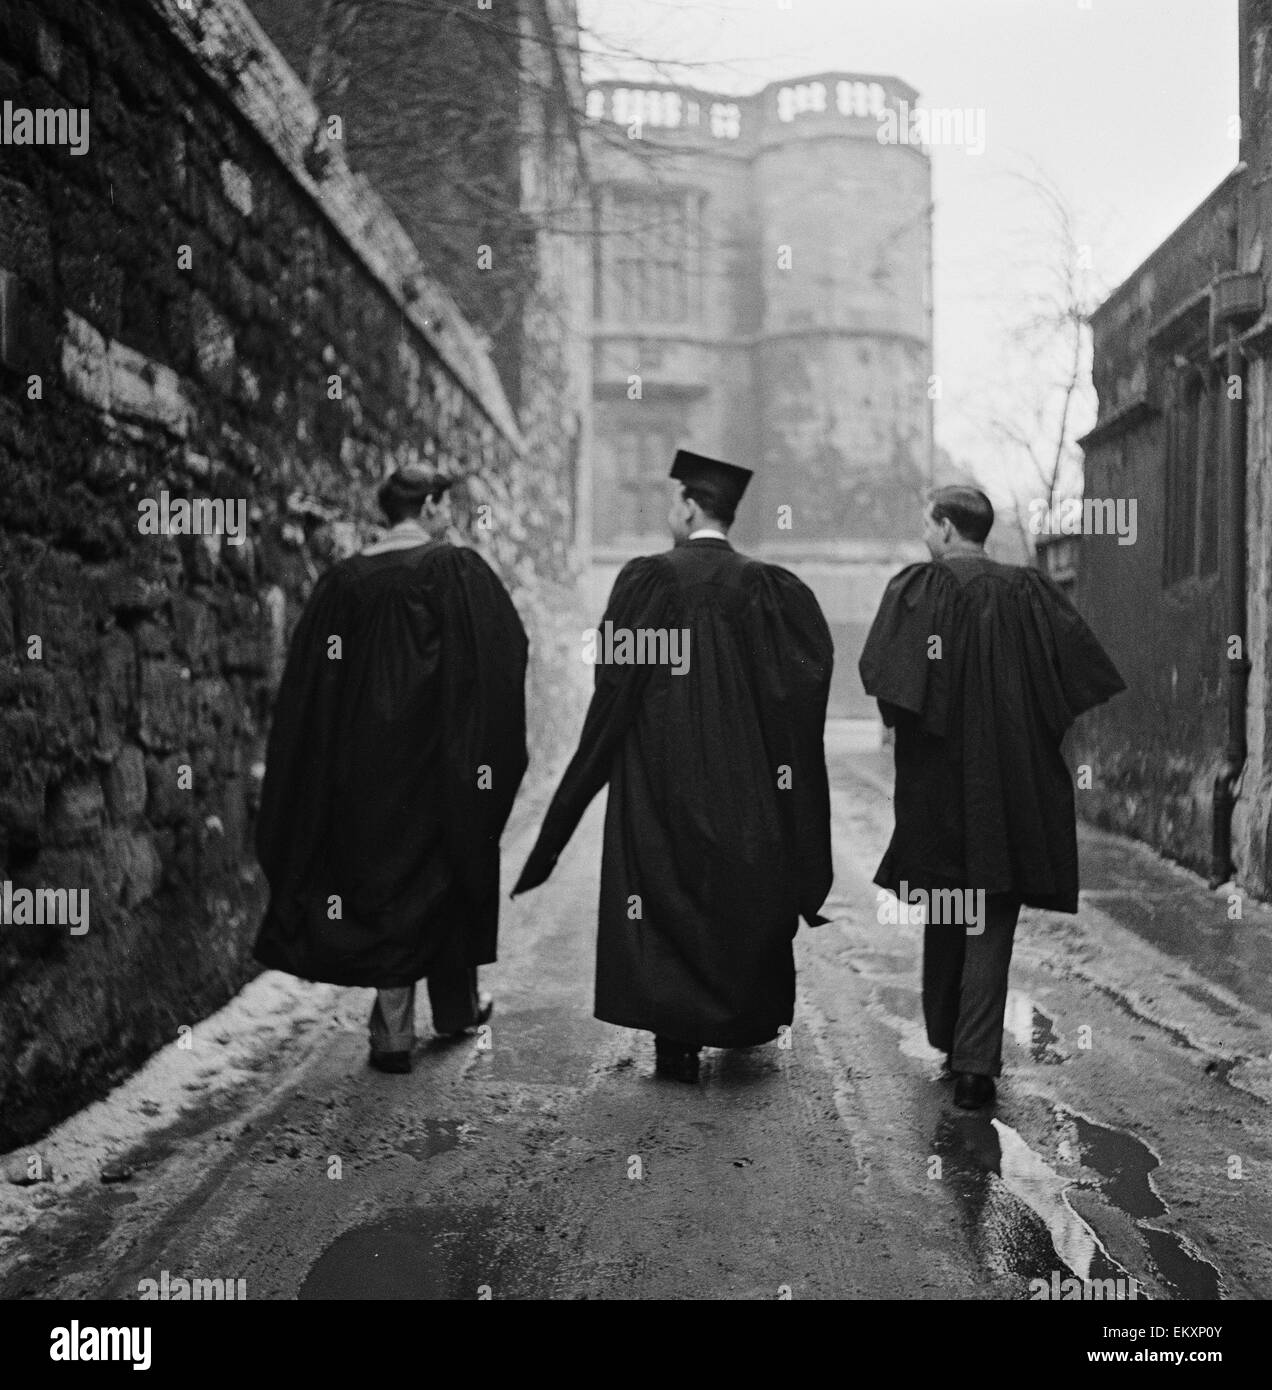 Étudiant de l'Université d'Oxford marche à travers l'une des étroites ruelles de la ville portant des robes de l'université. Vers 1950. Banque D'Images